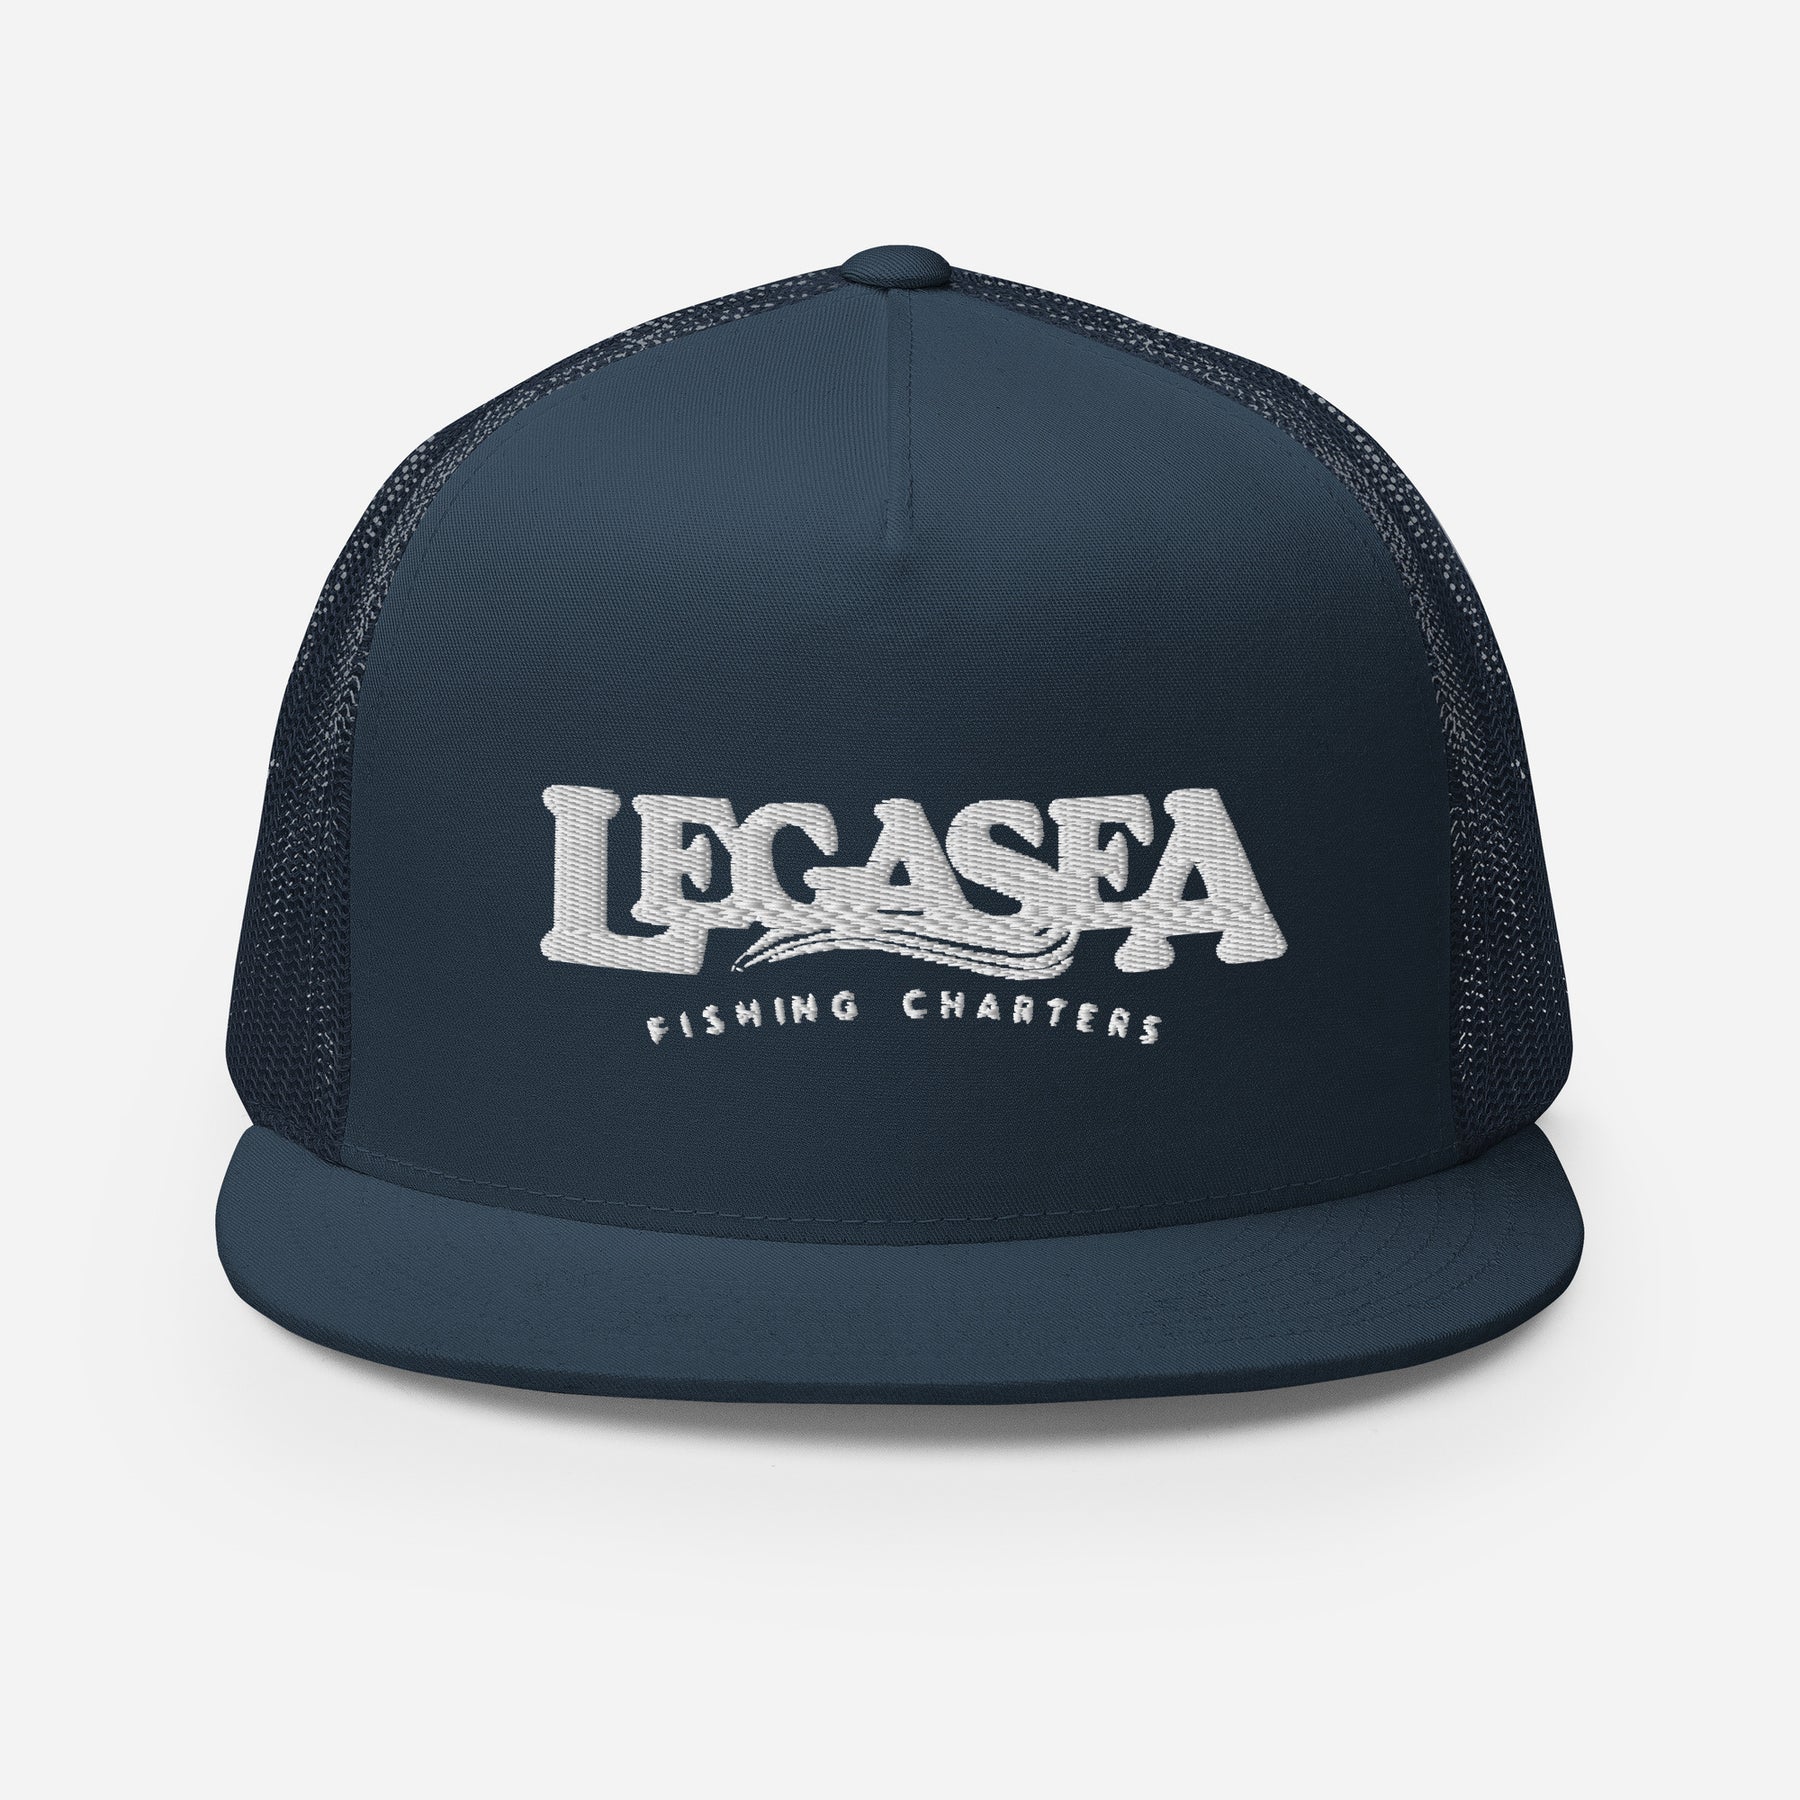 LegaSea Trucker Cap